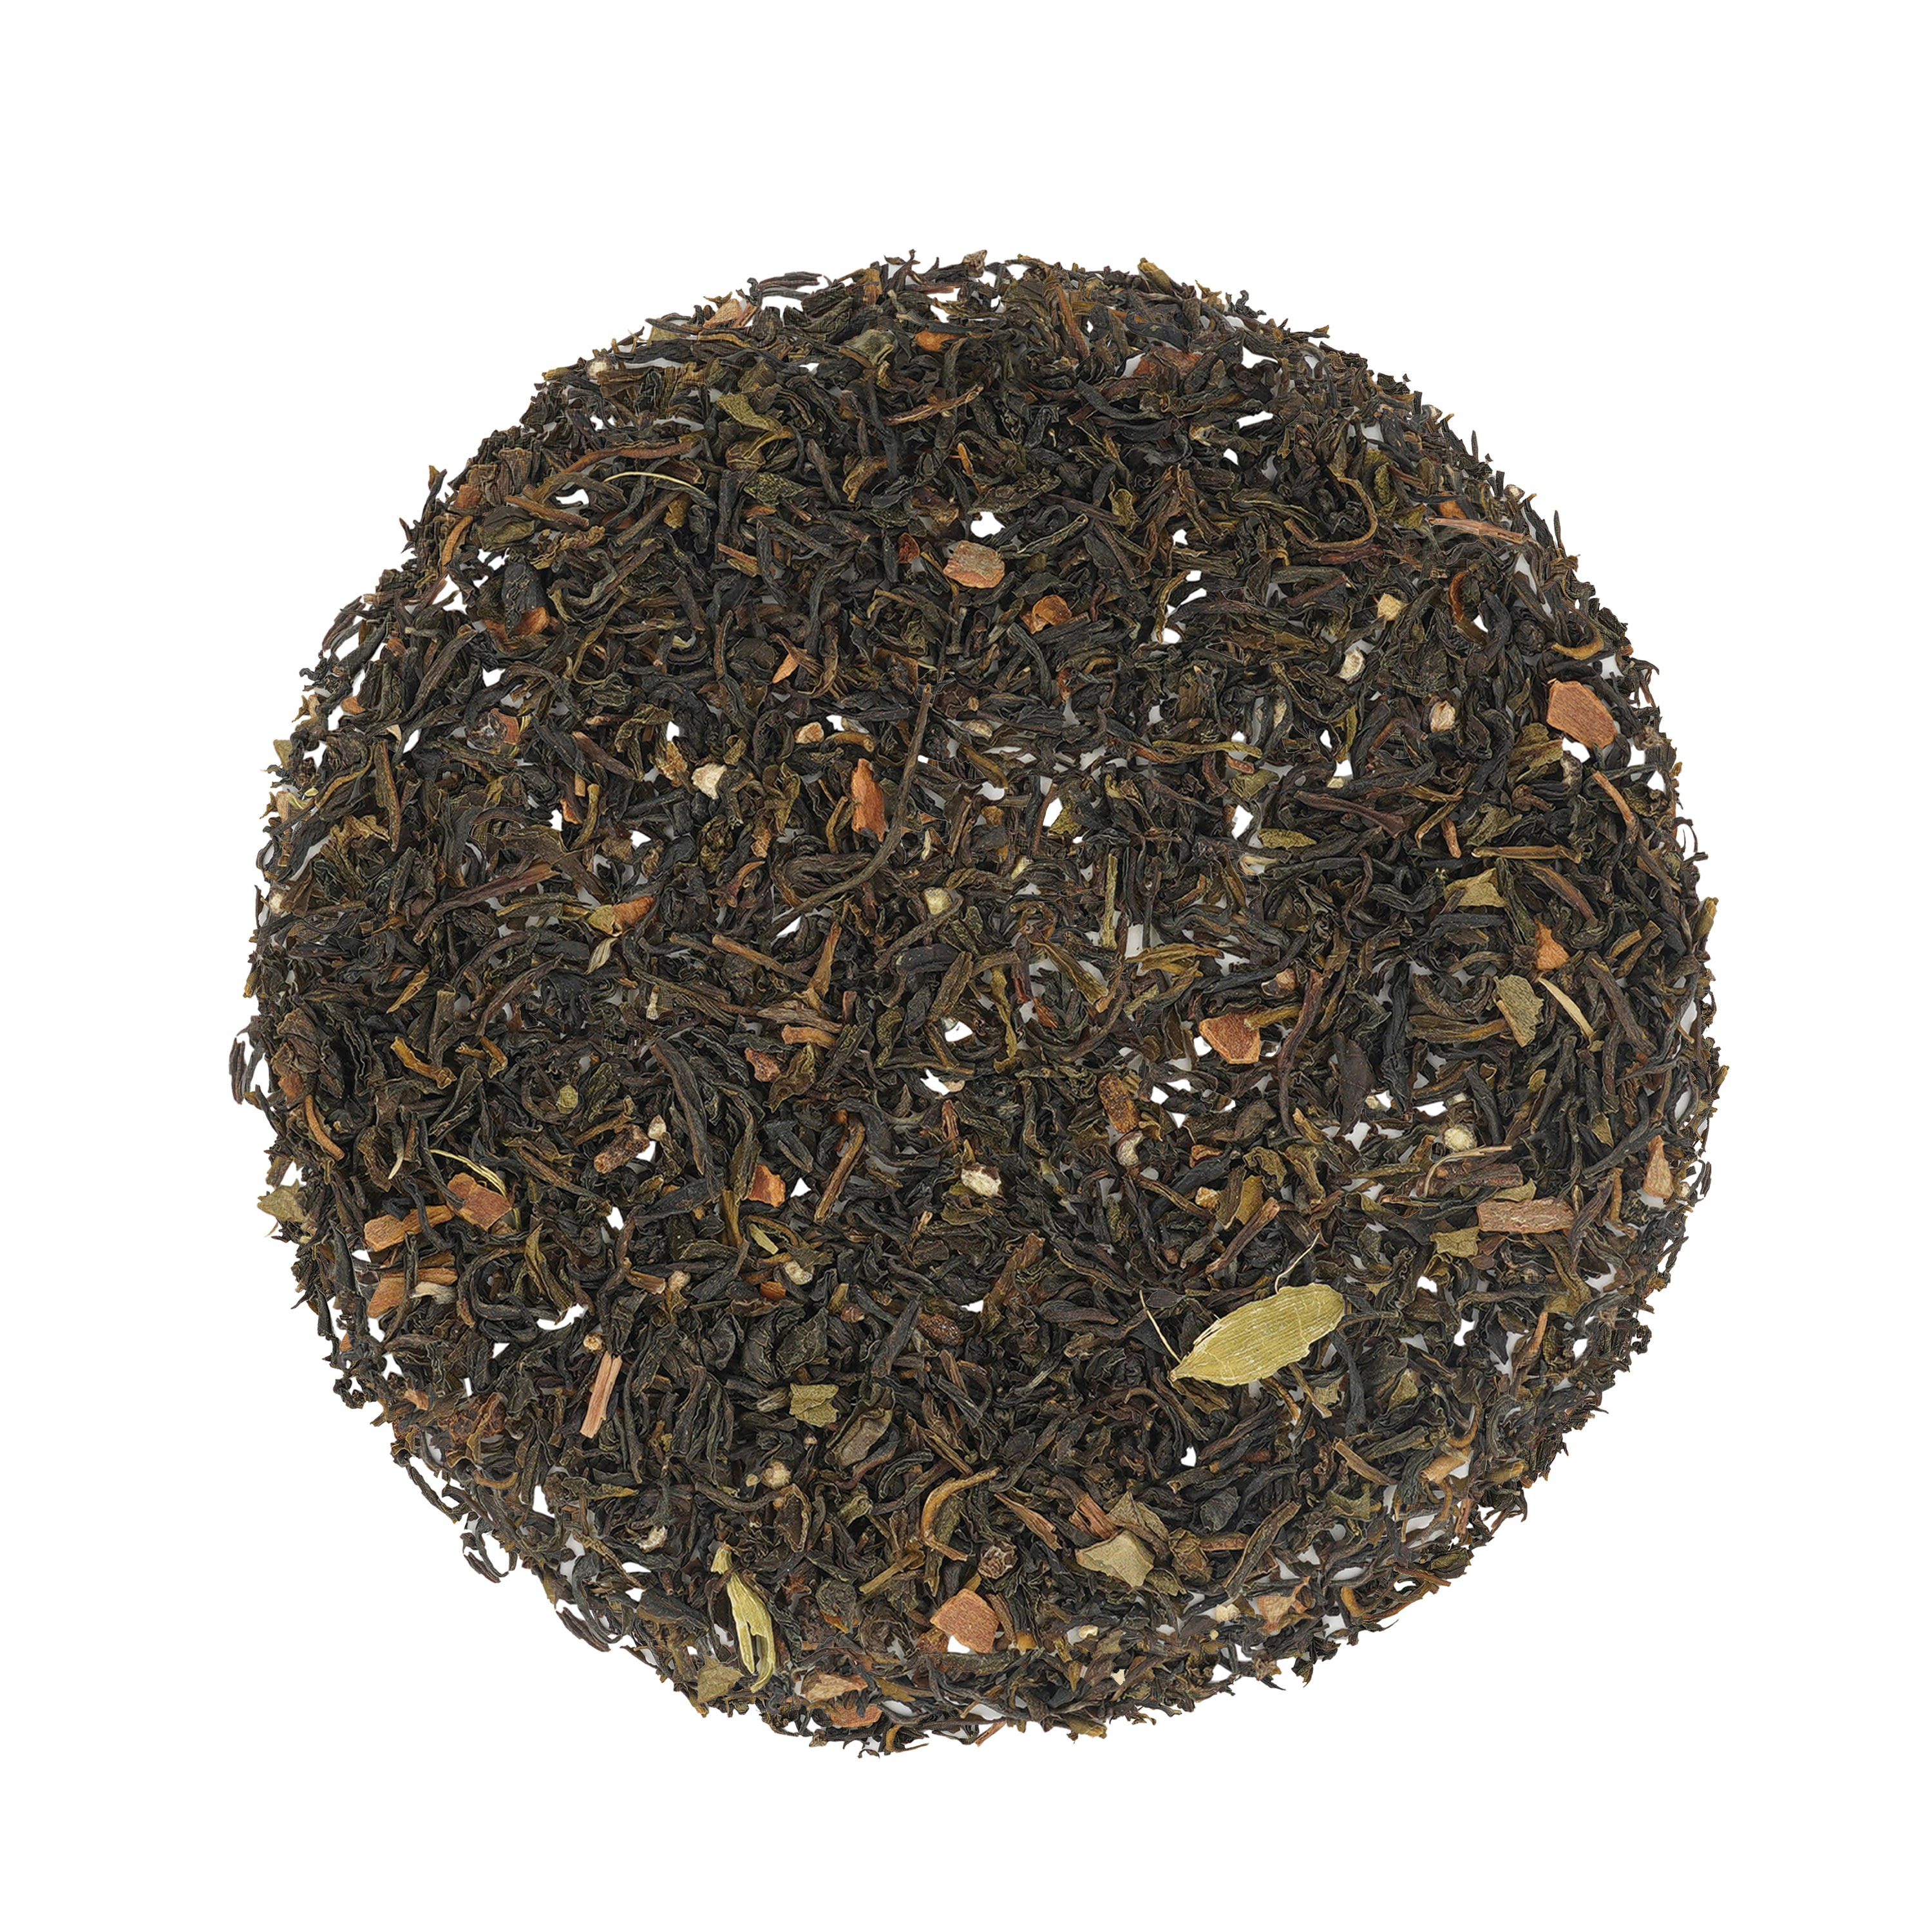 Earl Grey Masala Green Tea - 20 Tea Bags